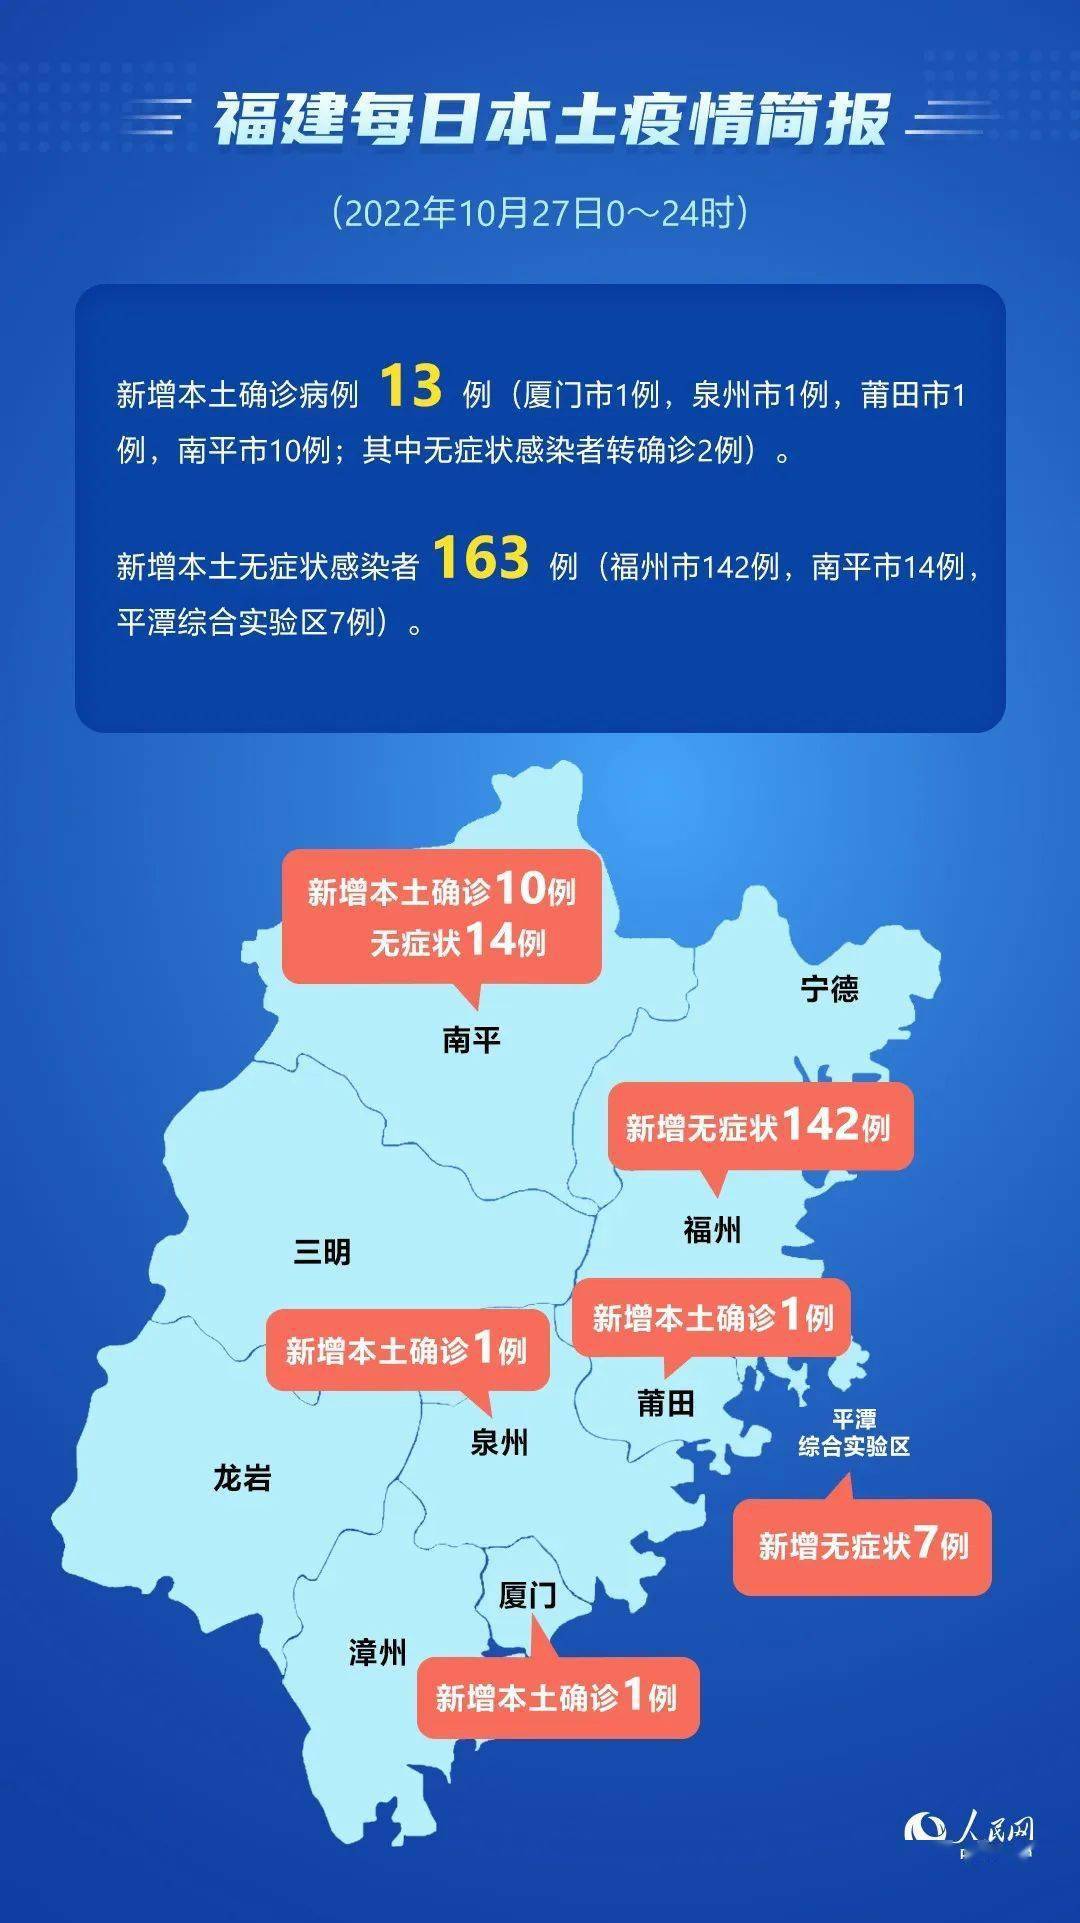 10月27日福建省新型冠状病毒肺炎疫情情况